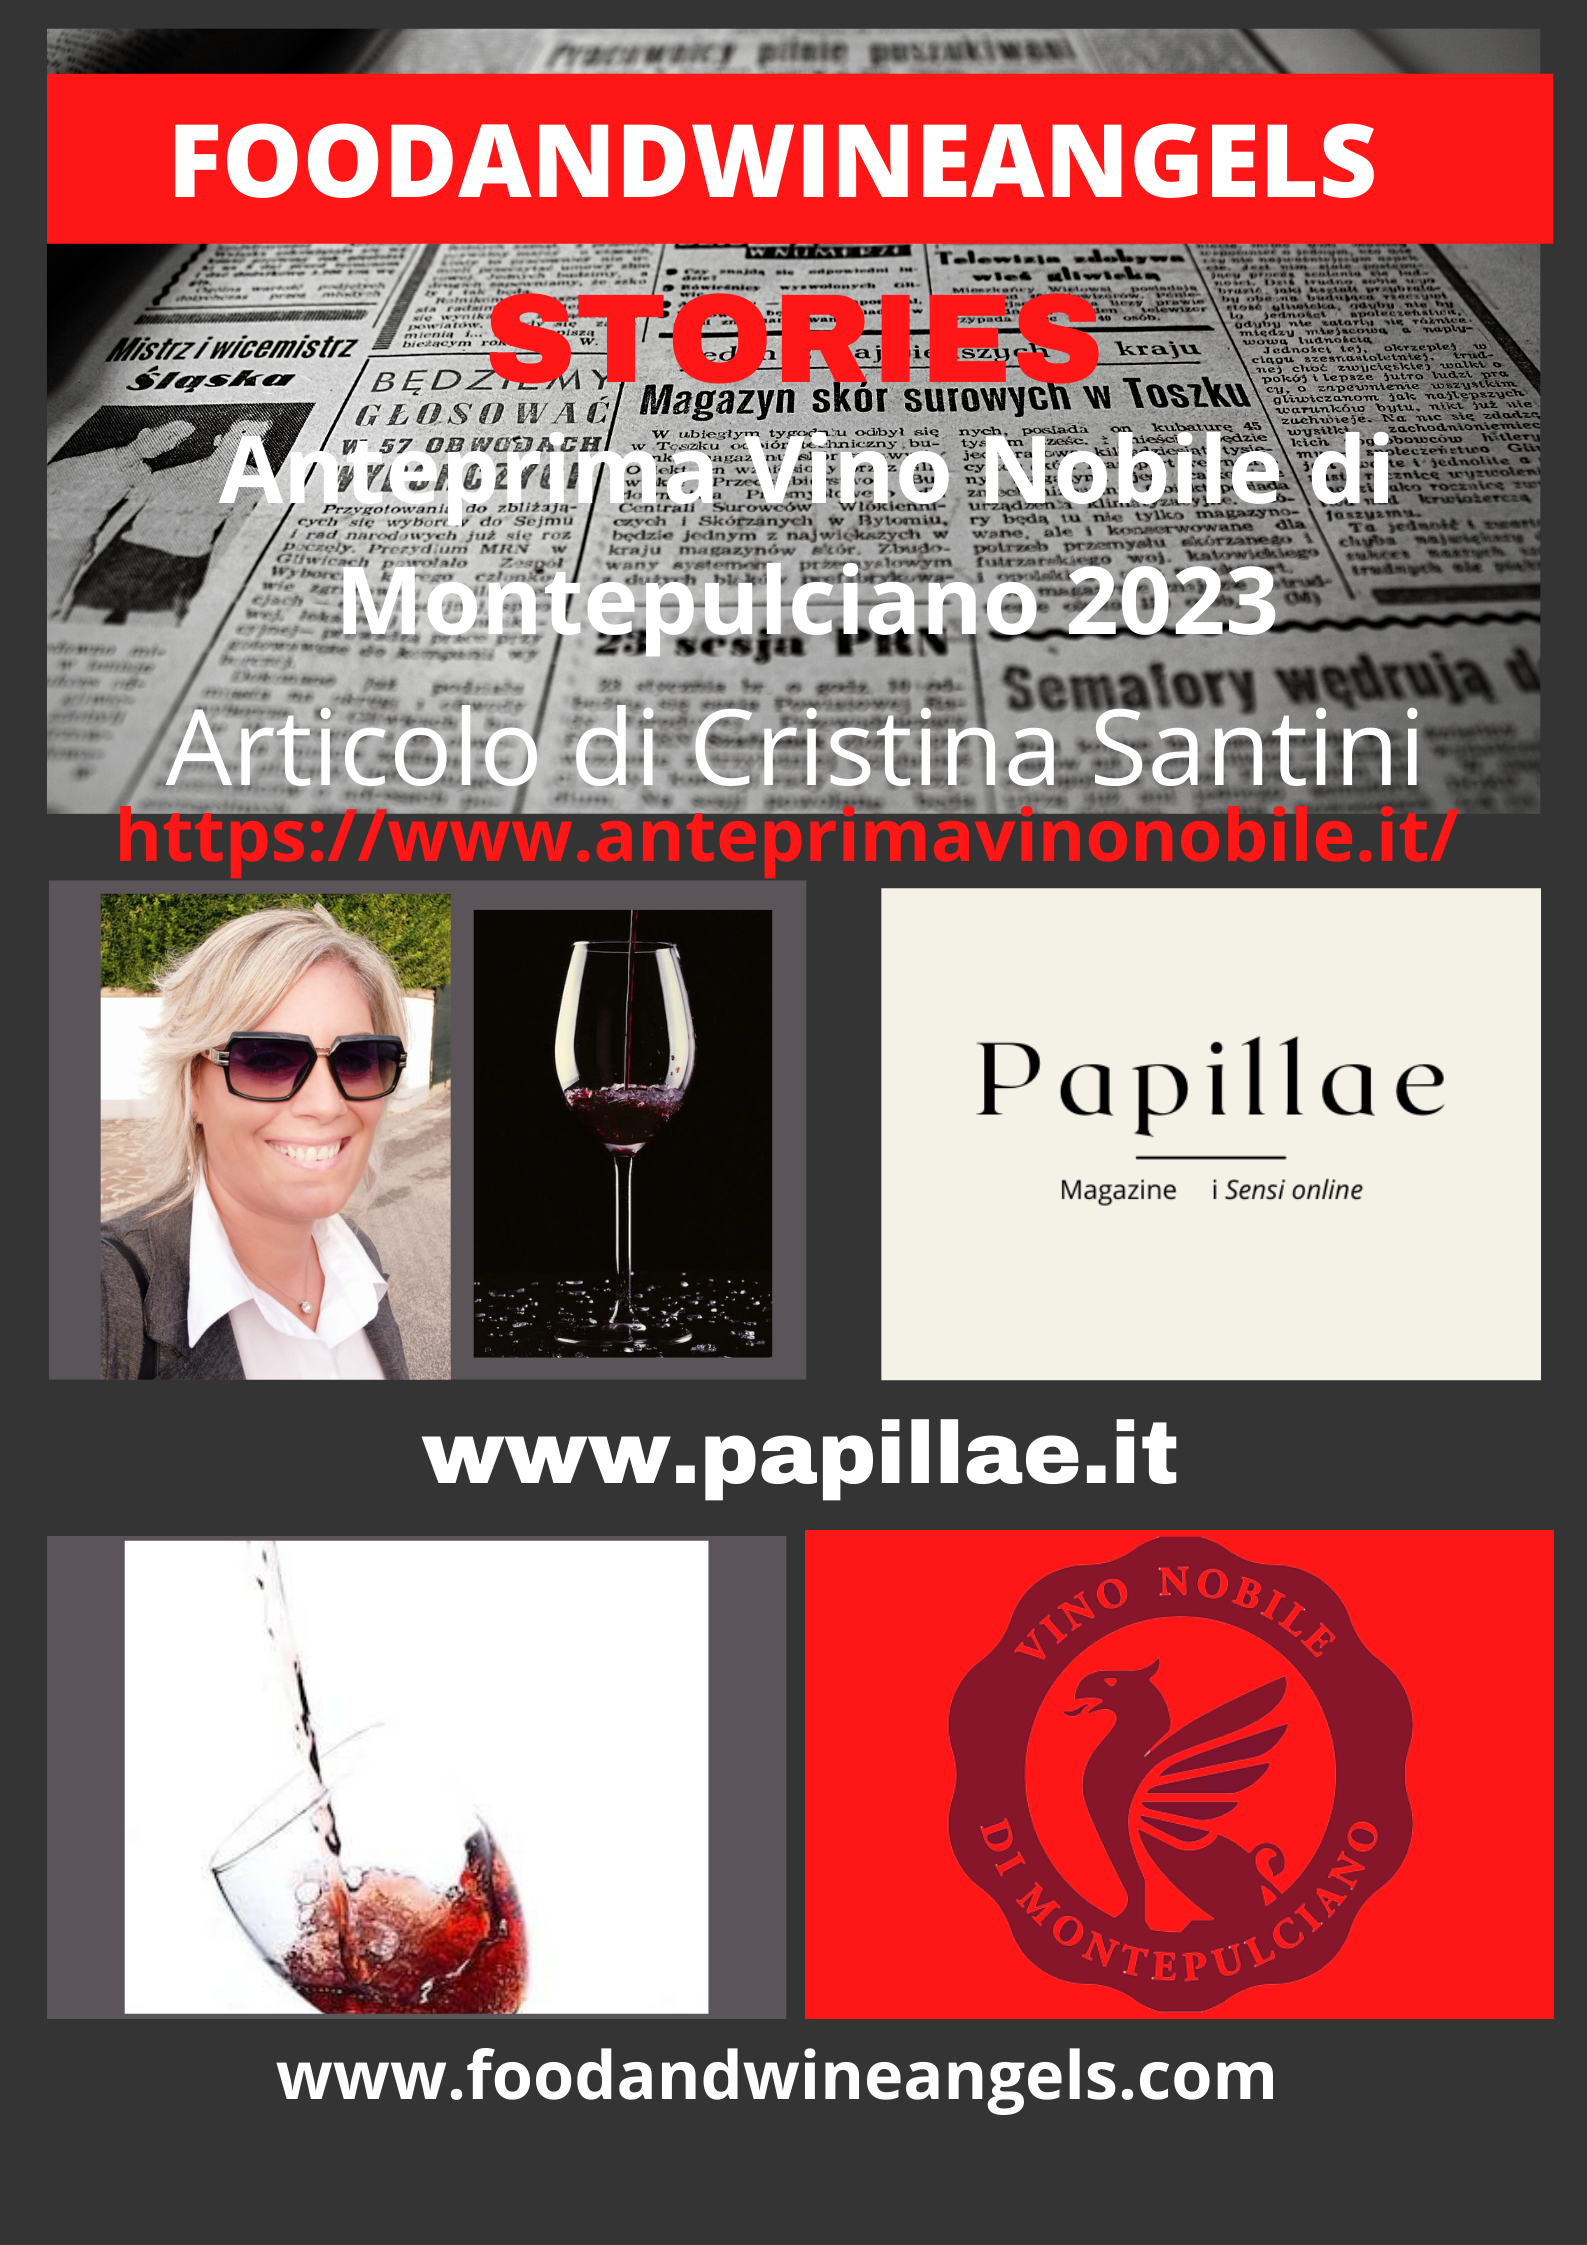 Anteprima Vino Nobile di Montepulciano 2023 di Cristina Santini